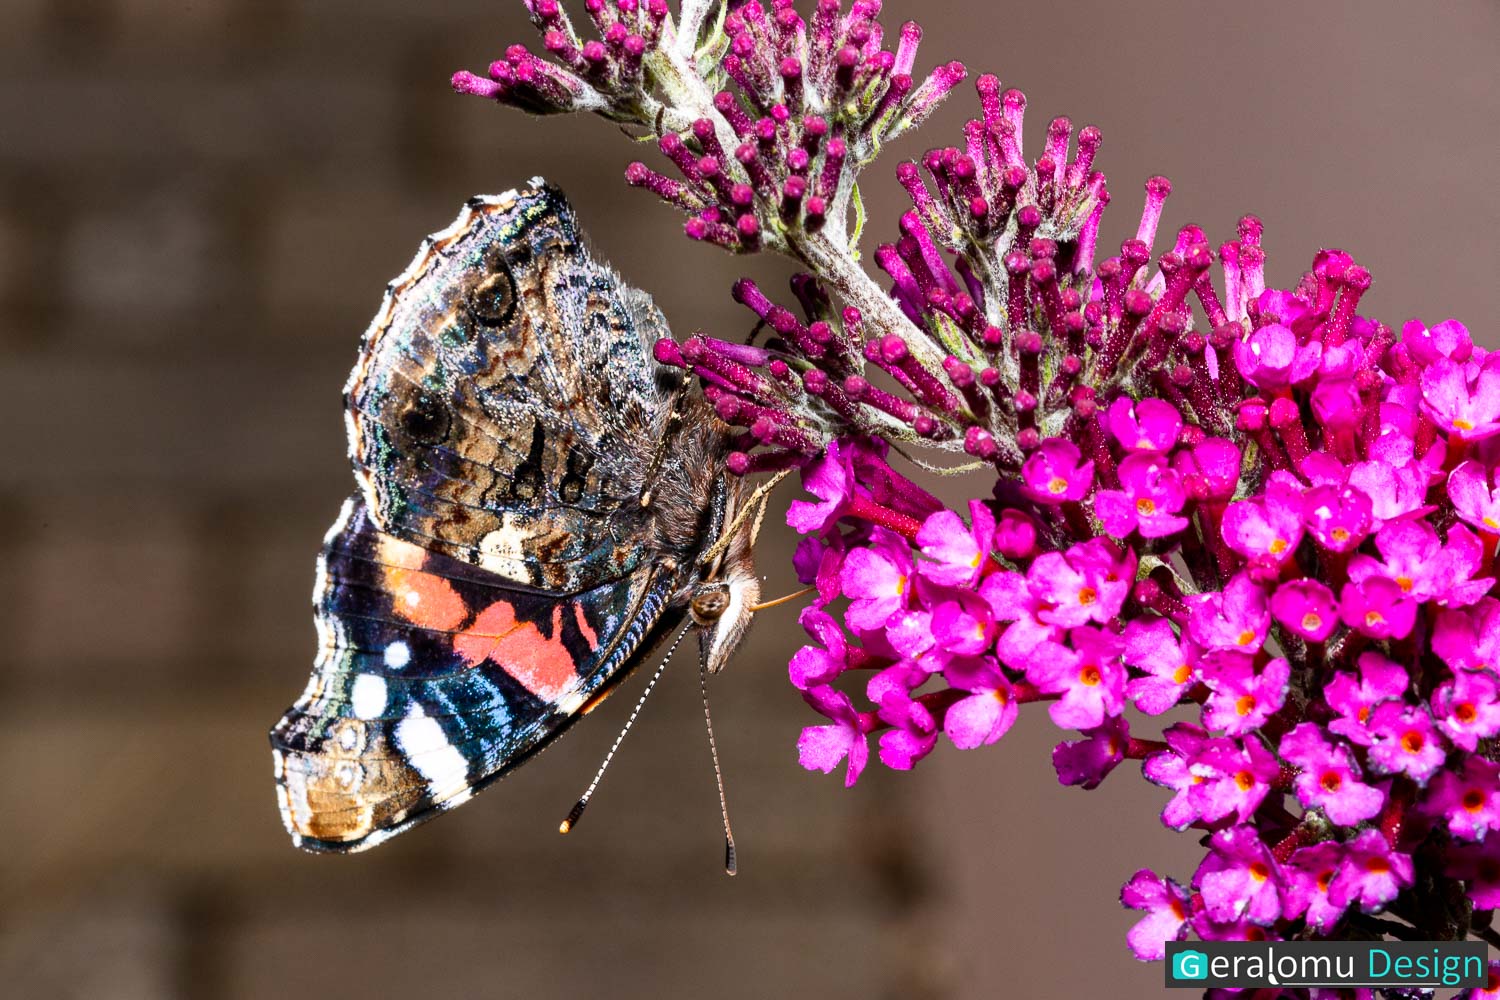 Makro: Das Foto zeigt einen Schmetterling mit gefalteten Flügeln, der kopfüber an einer lila Blütentraube hängt.